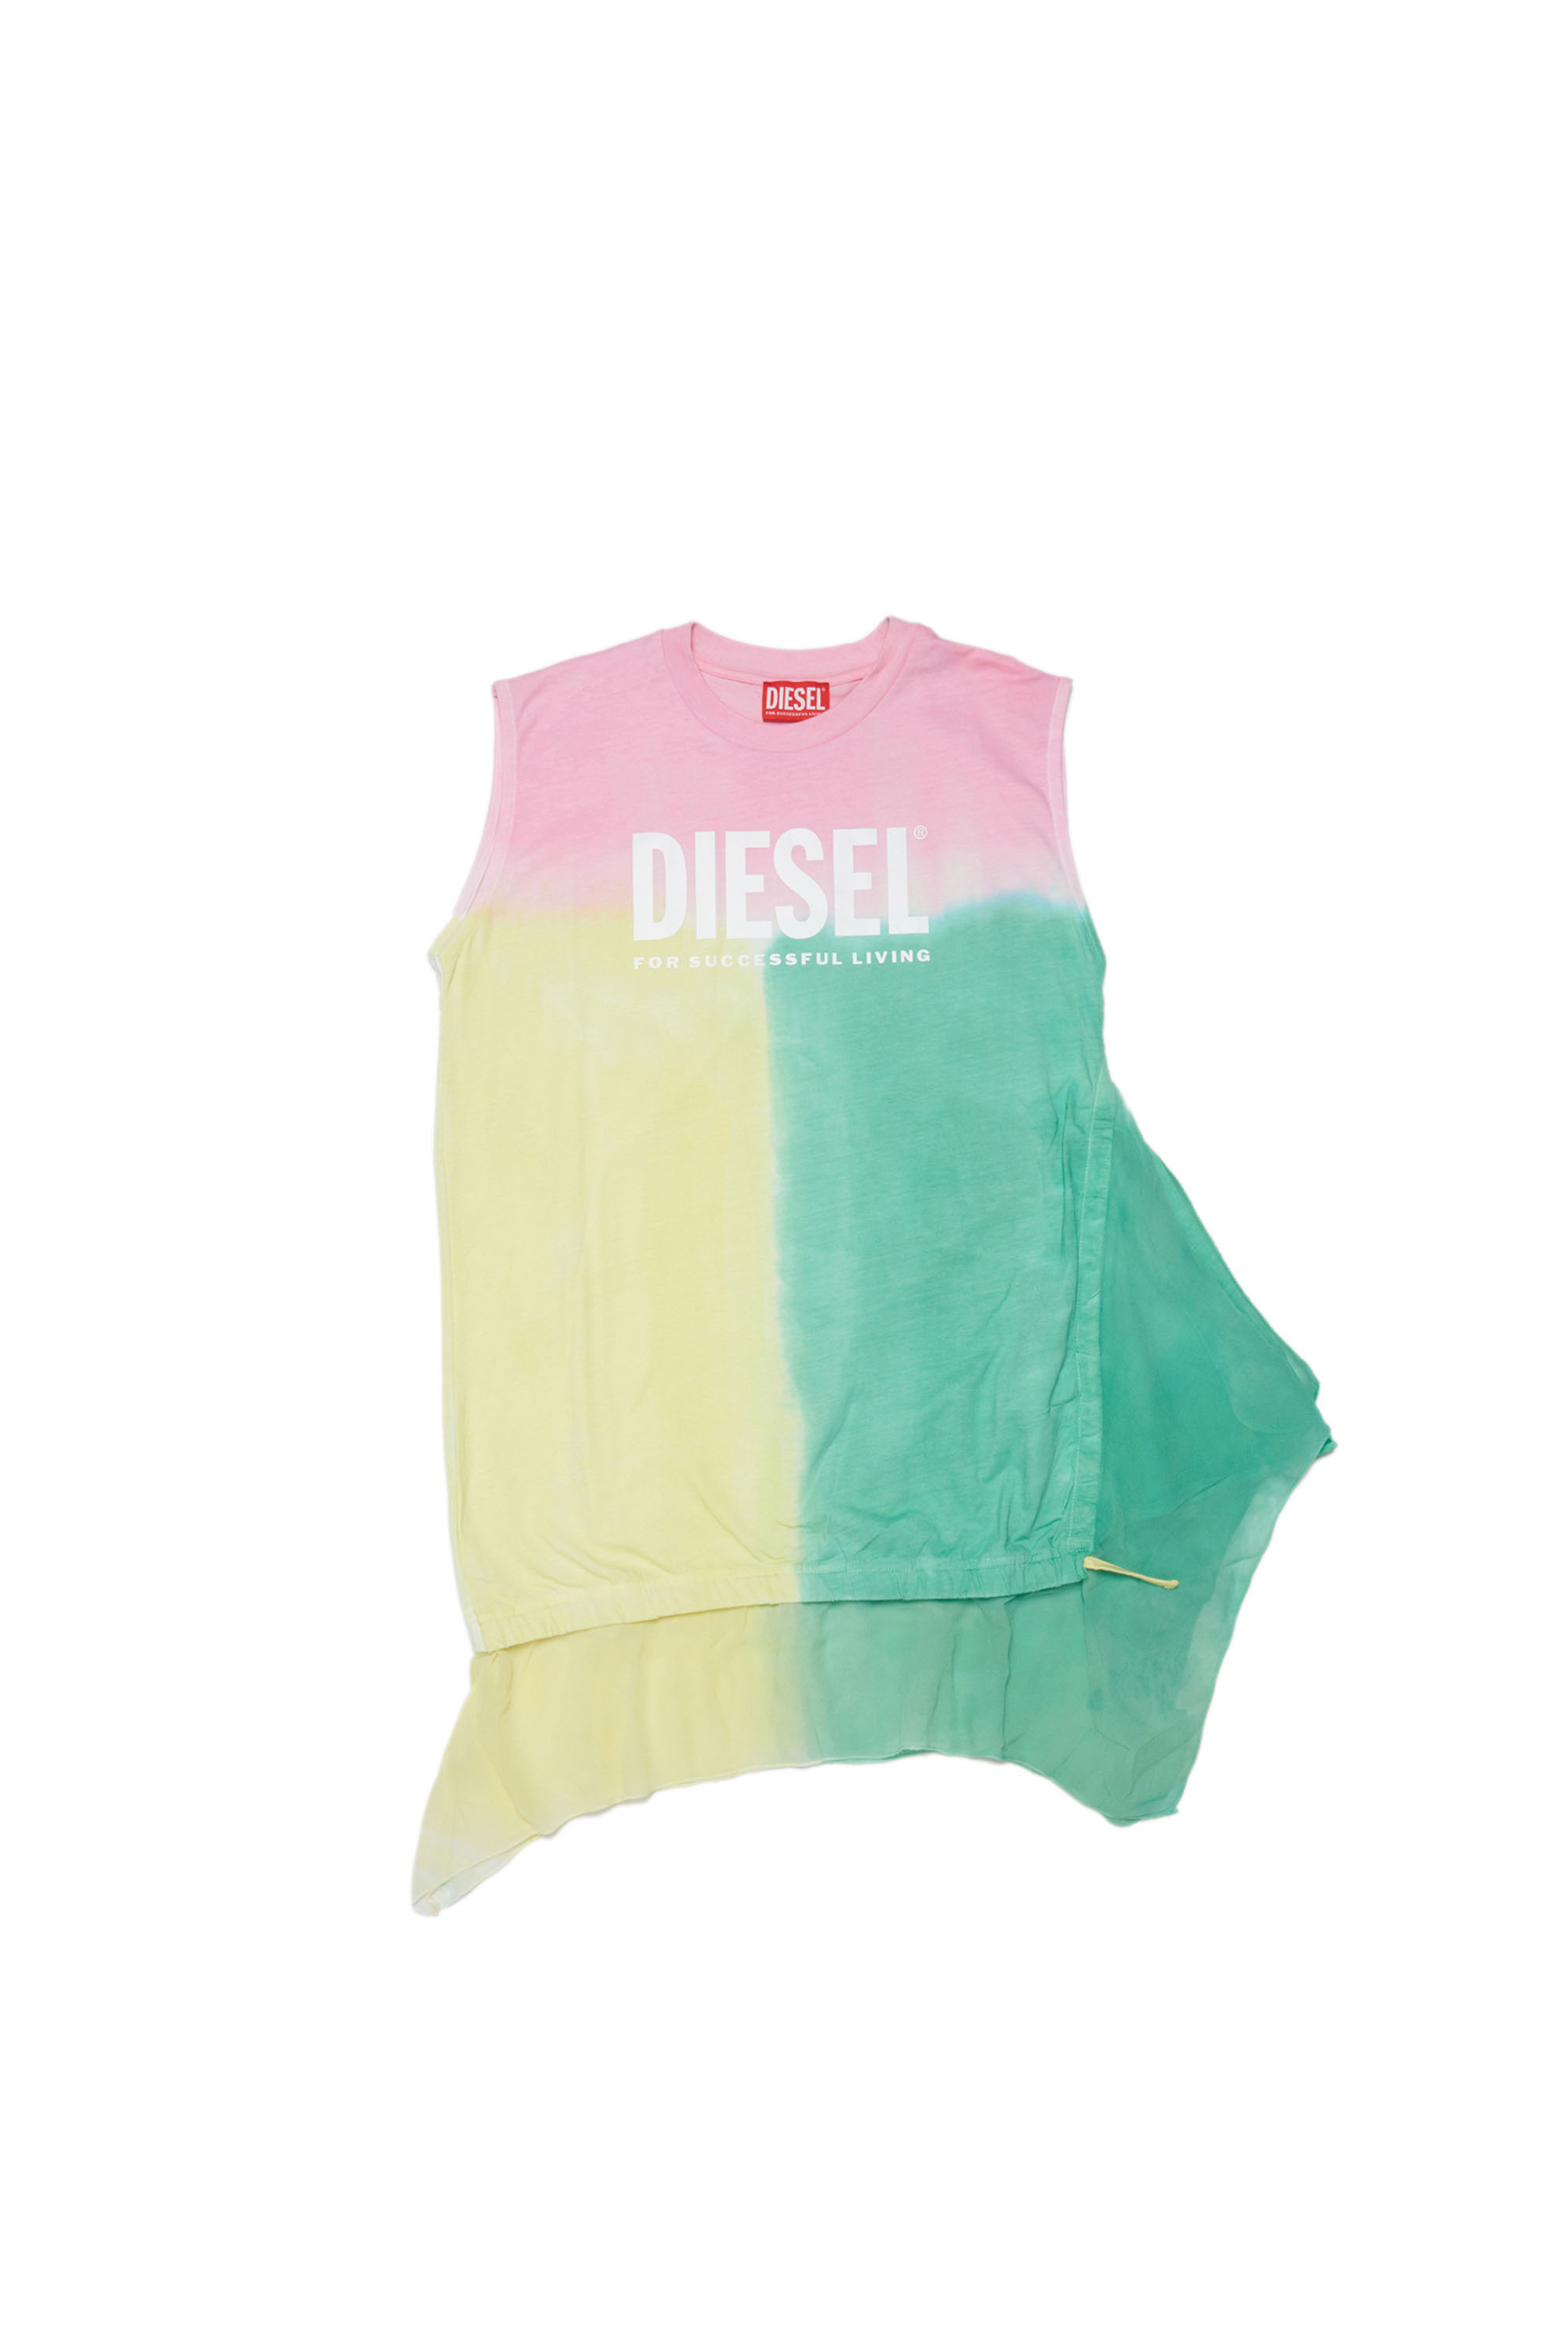 Diesel - DROLLETTE, Pink/Green - Image 1